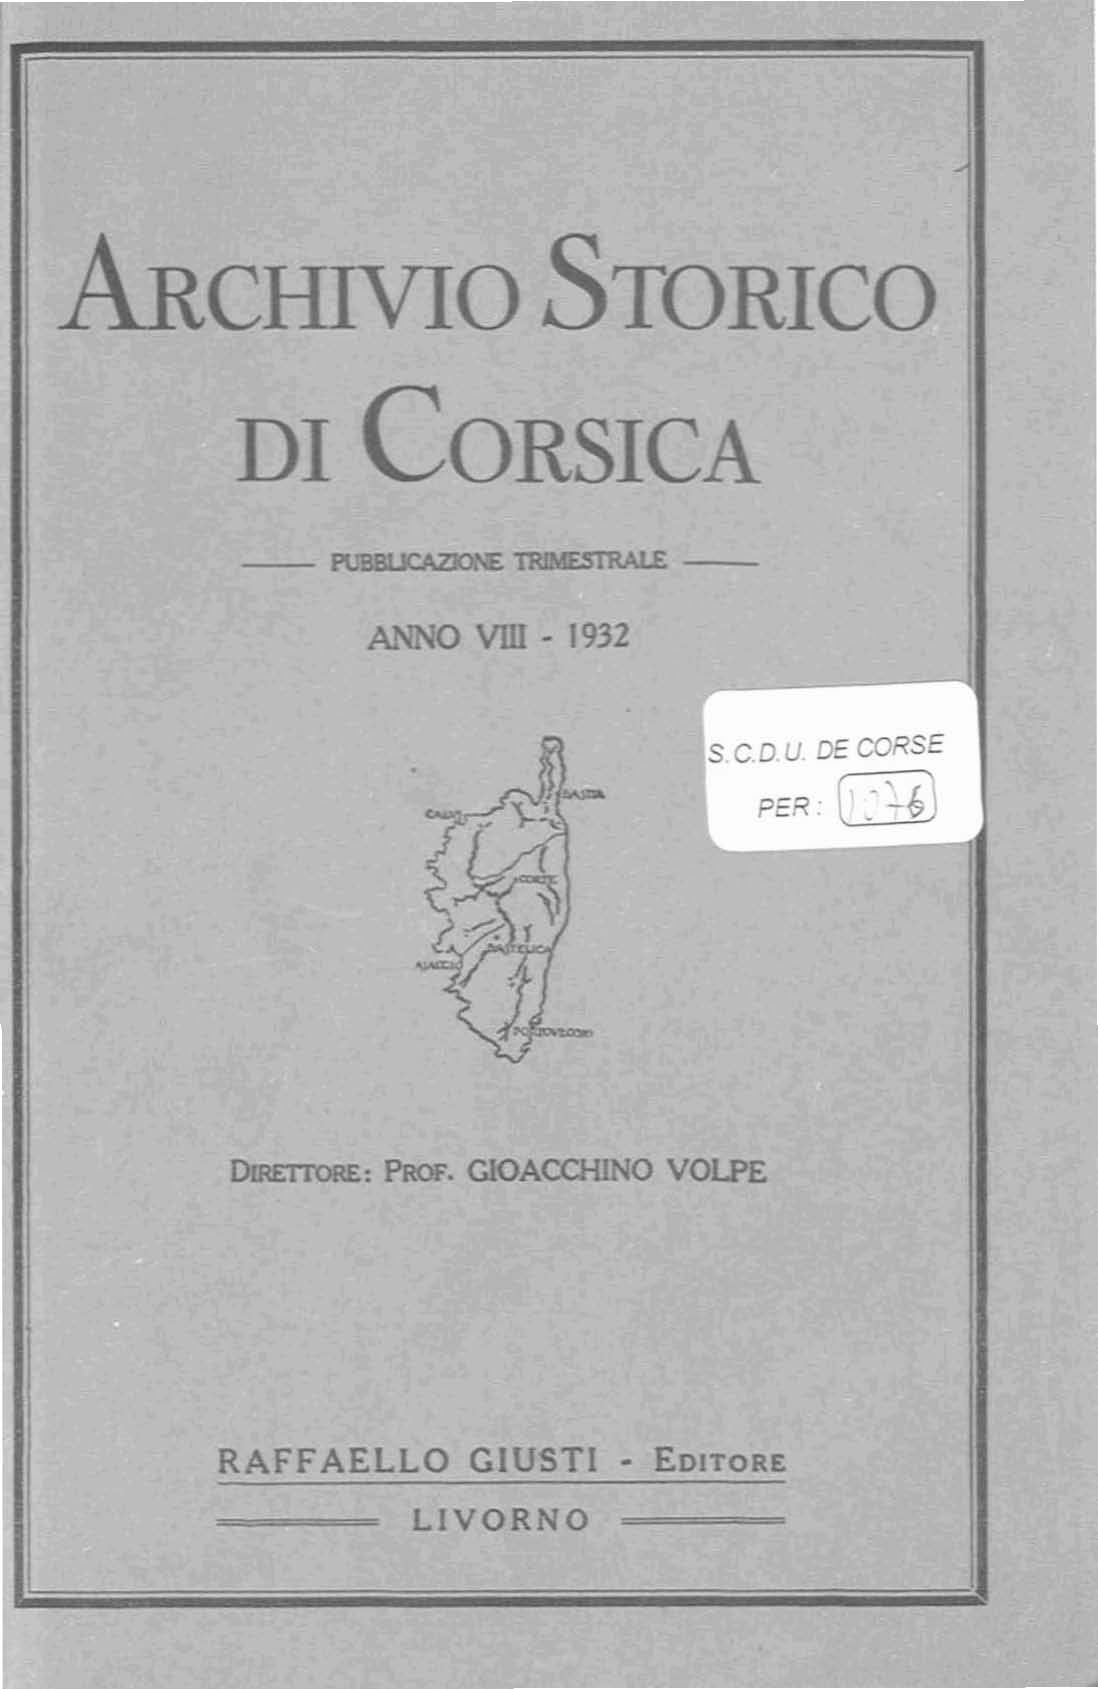 >Archivio Storico di Corsica (1932)